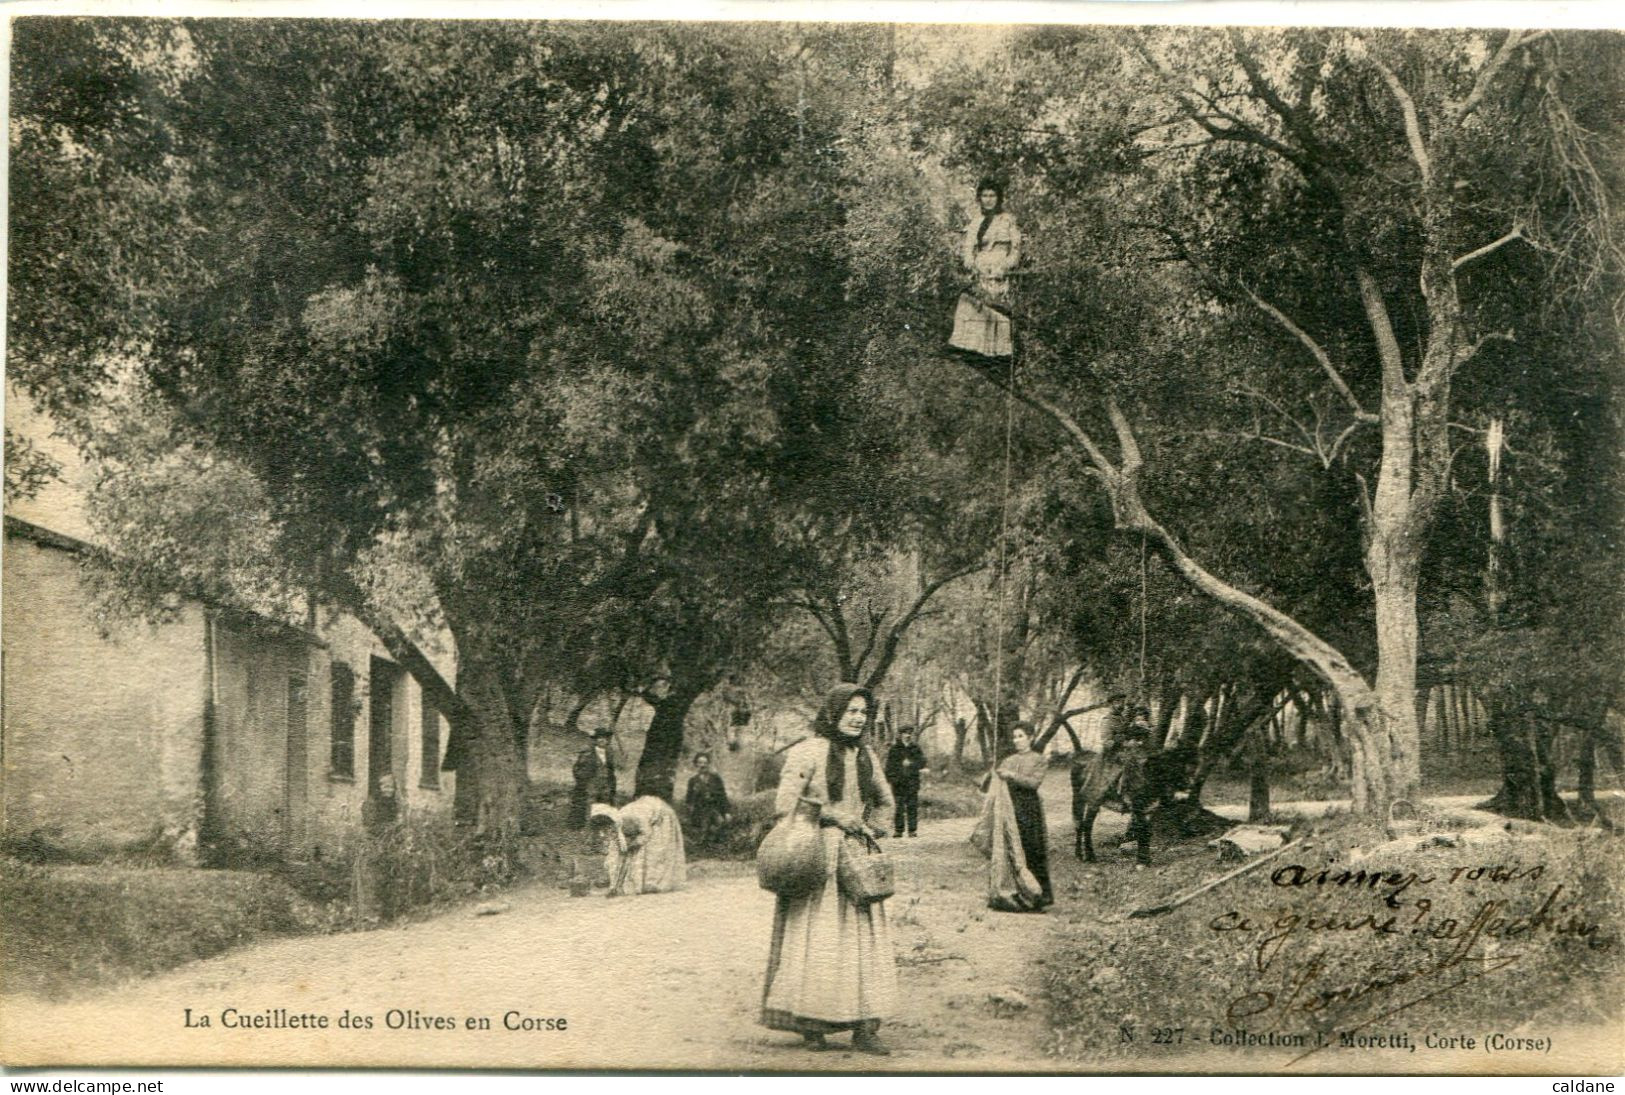 2A-CORSE  -  La Cueillette Des Olives En Corse        Collection J.Moretti,Corte - Landbouw